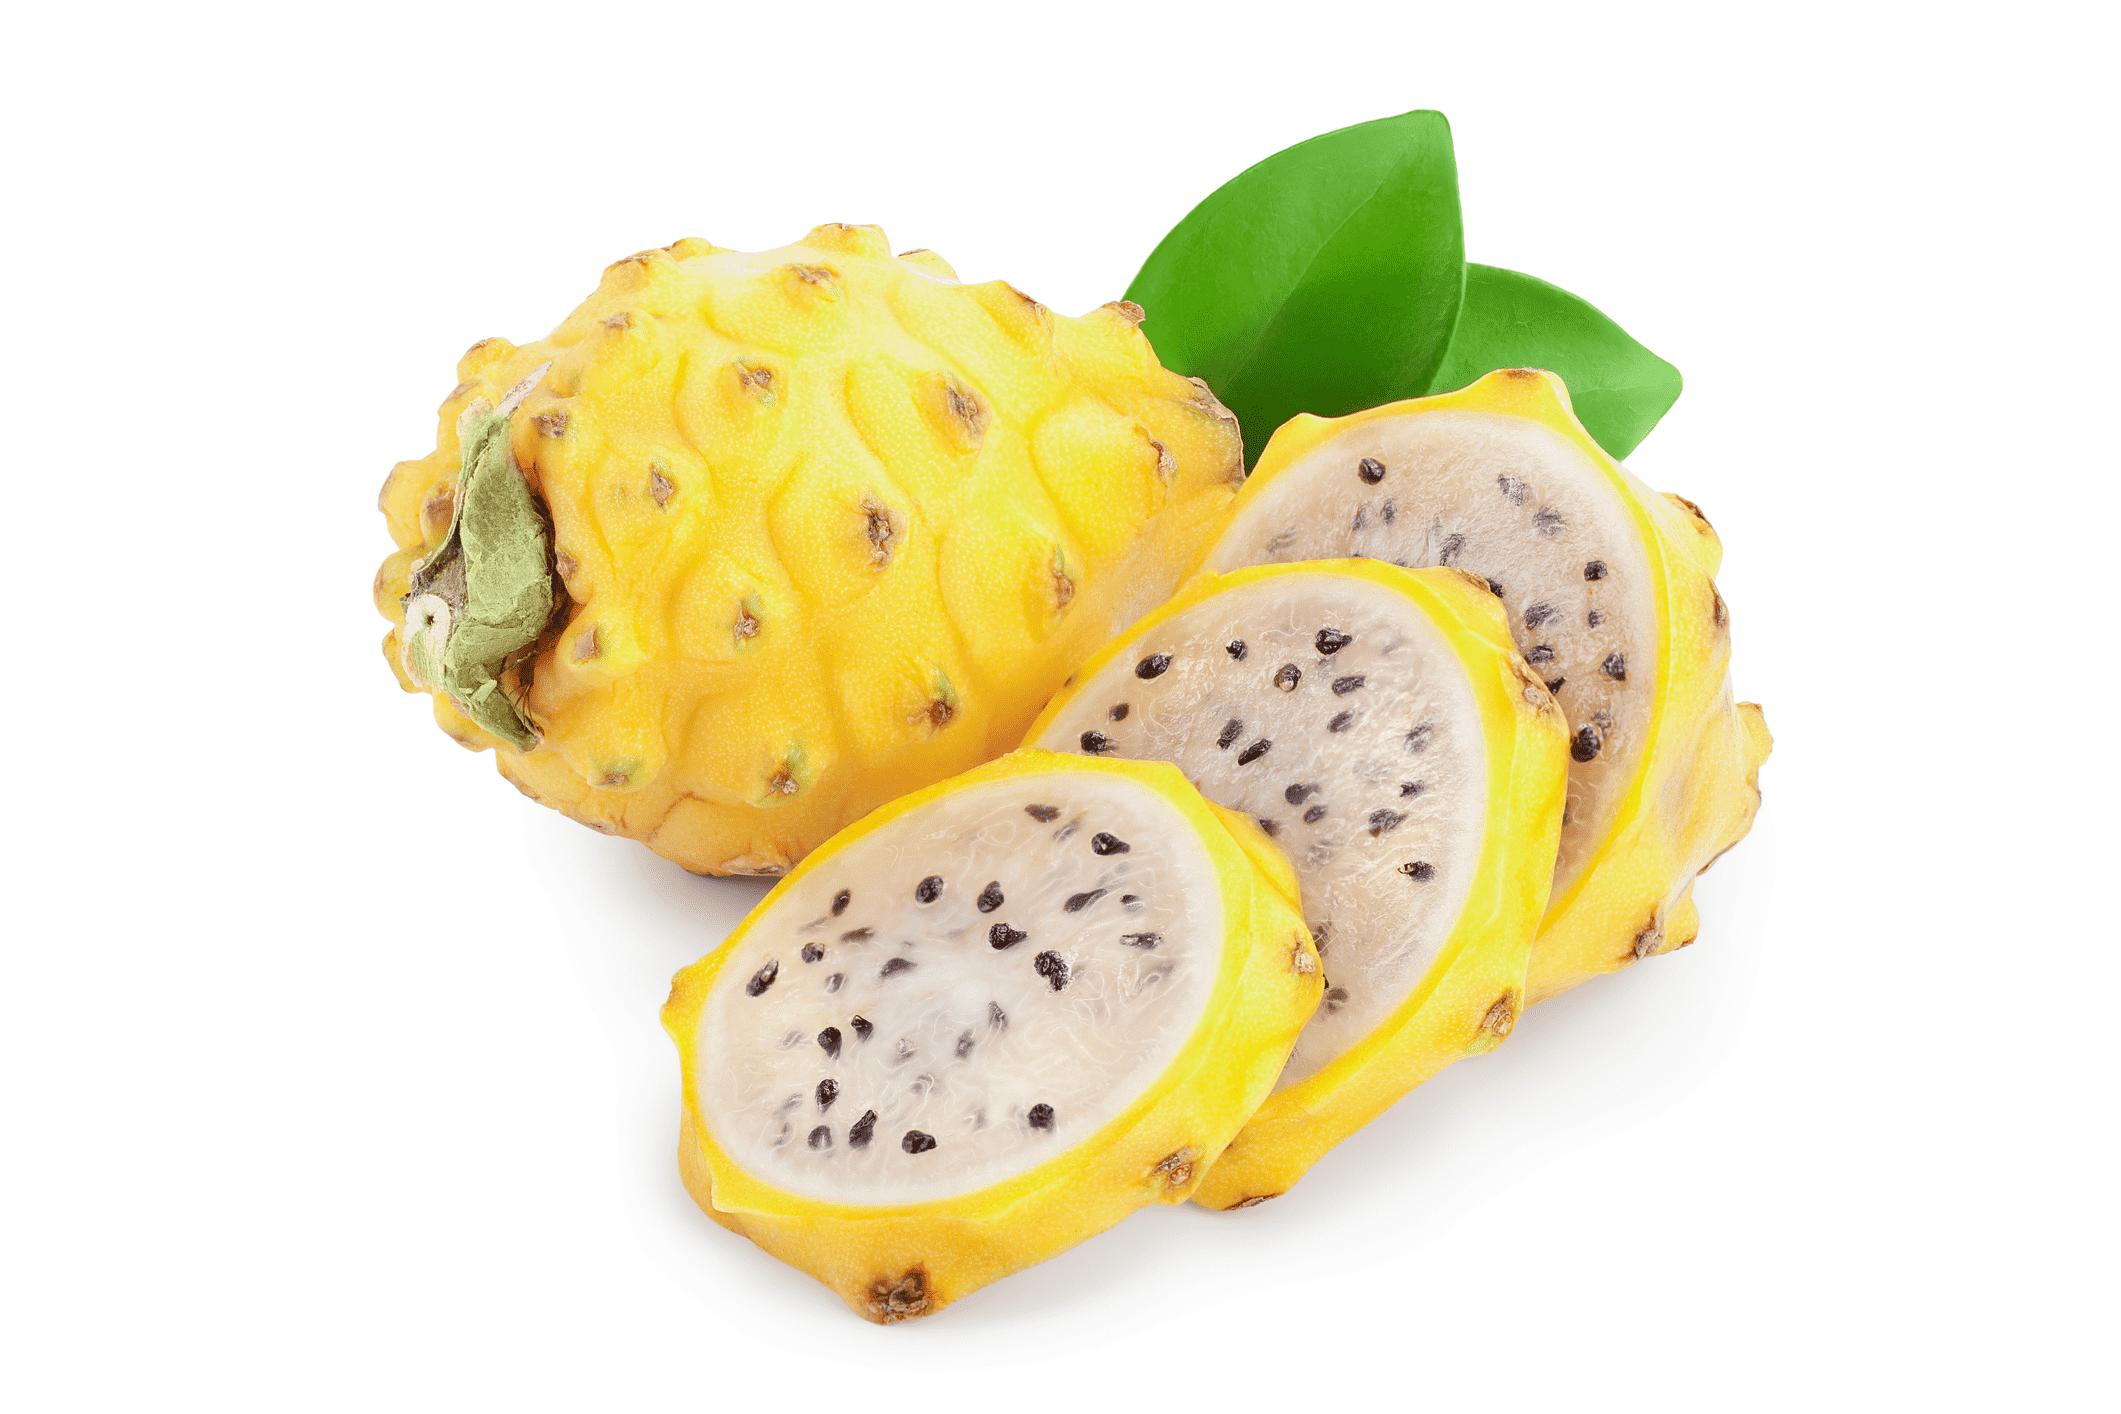 Dragon Fruit Fresh / Pitaya Amarillo ca550g-600g/pack，price per package